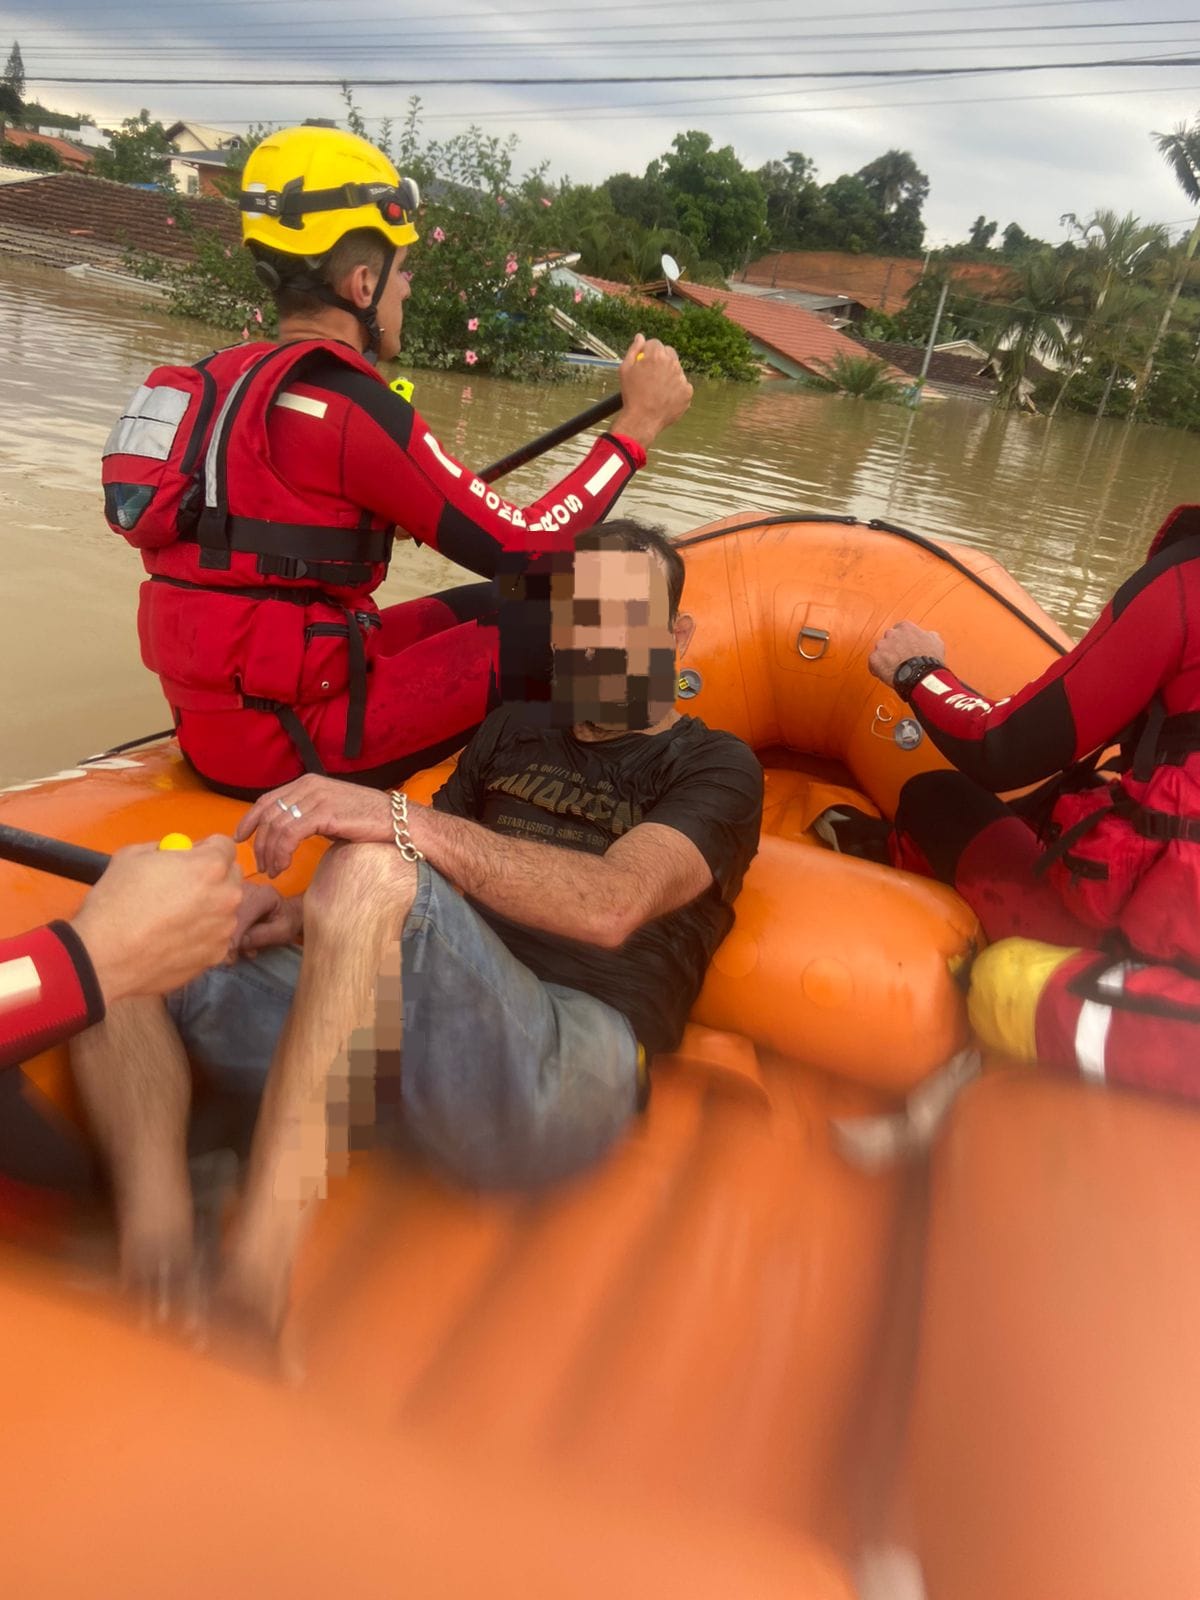 Bombeiros salvam homem que caiu em área alagada em Rio do Sul